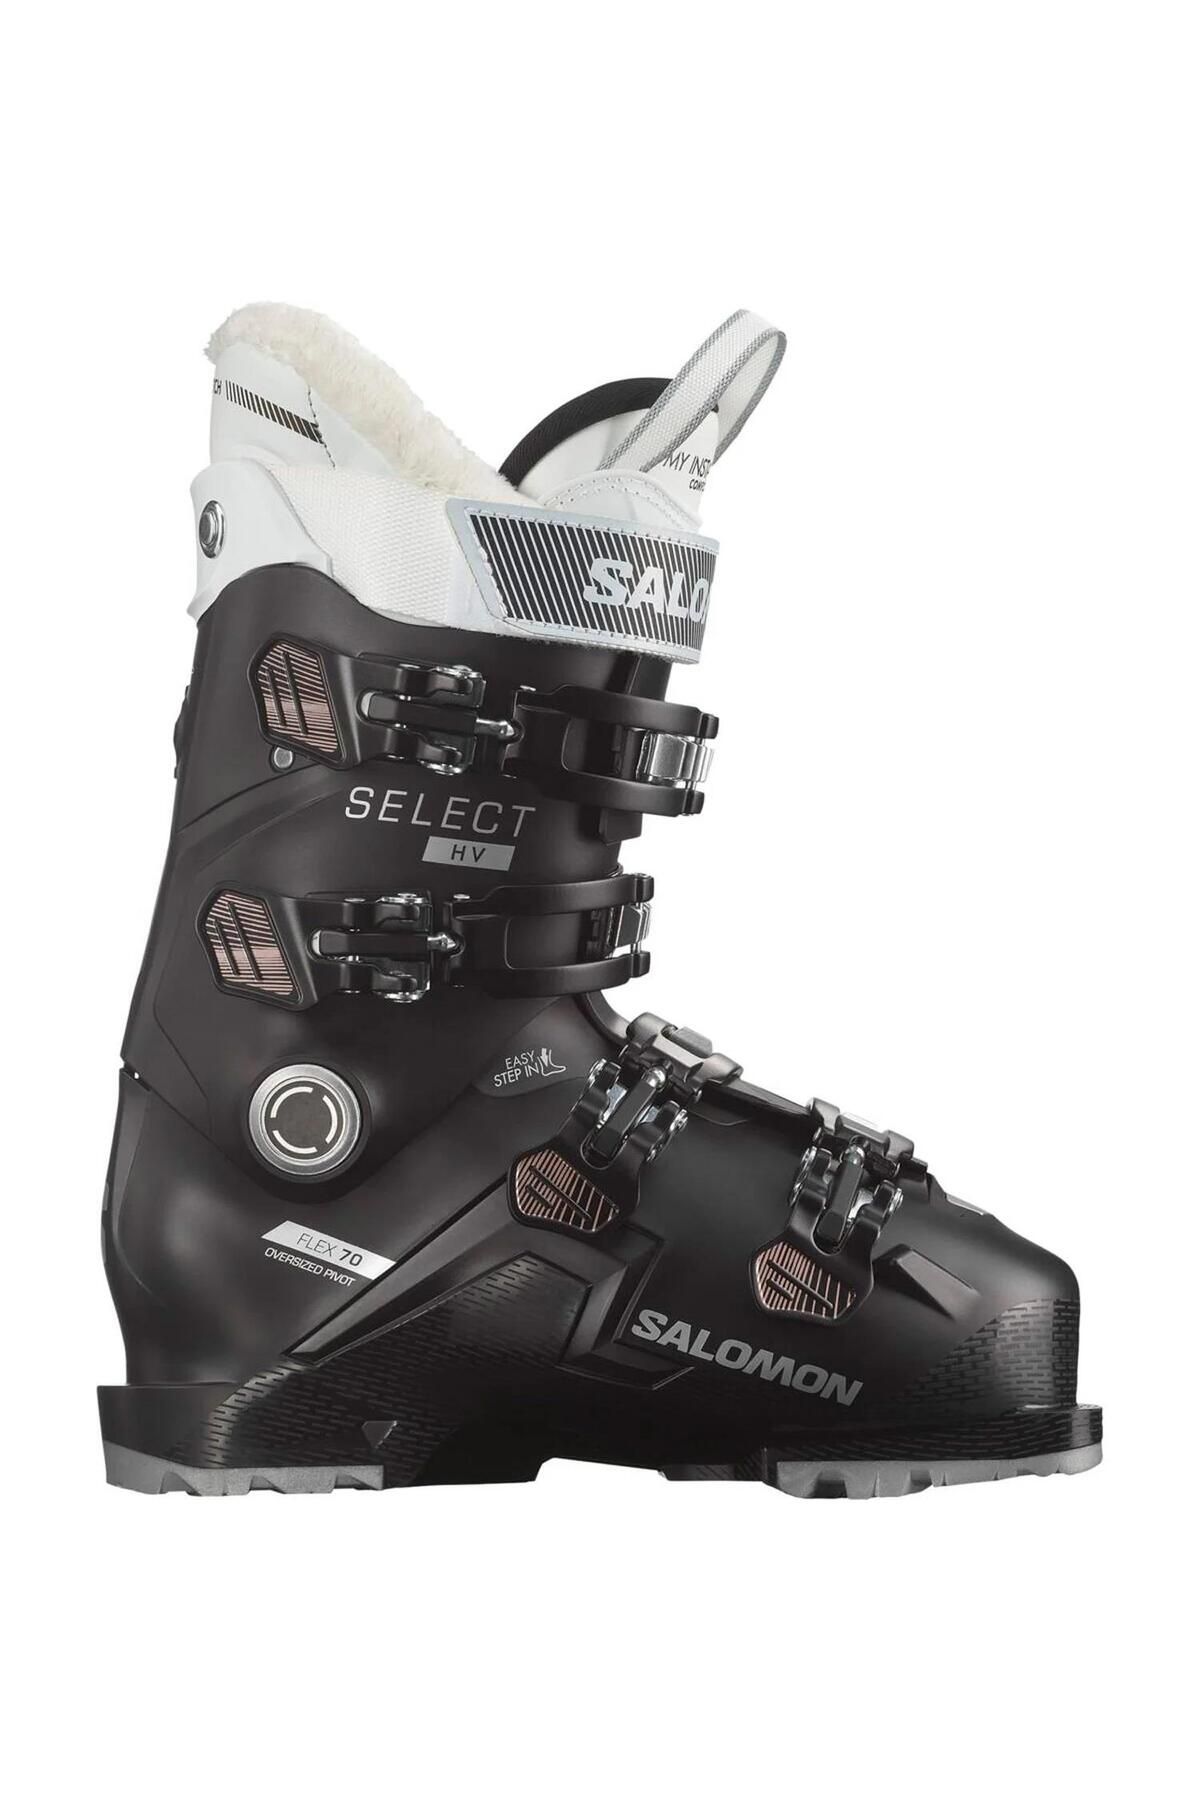 Salomon Select Hv 70 Kadın Kayak Ayakkabısı-l47343200blk